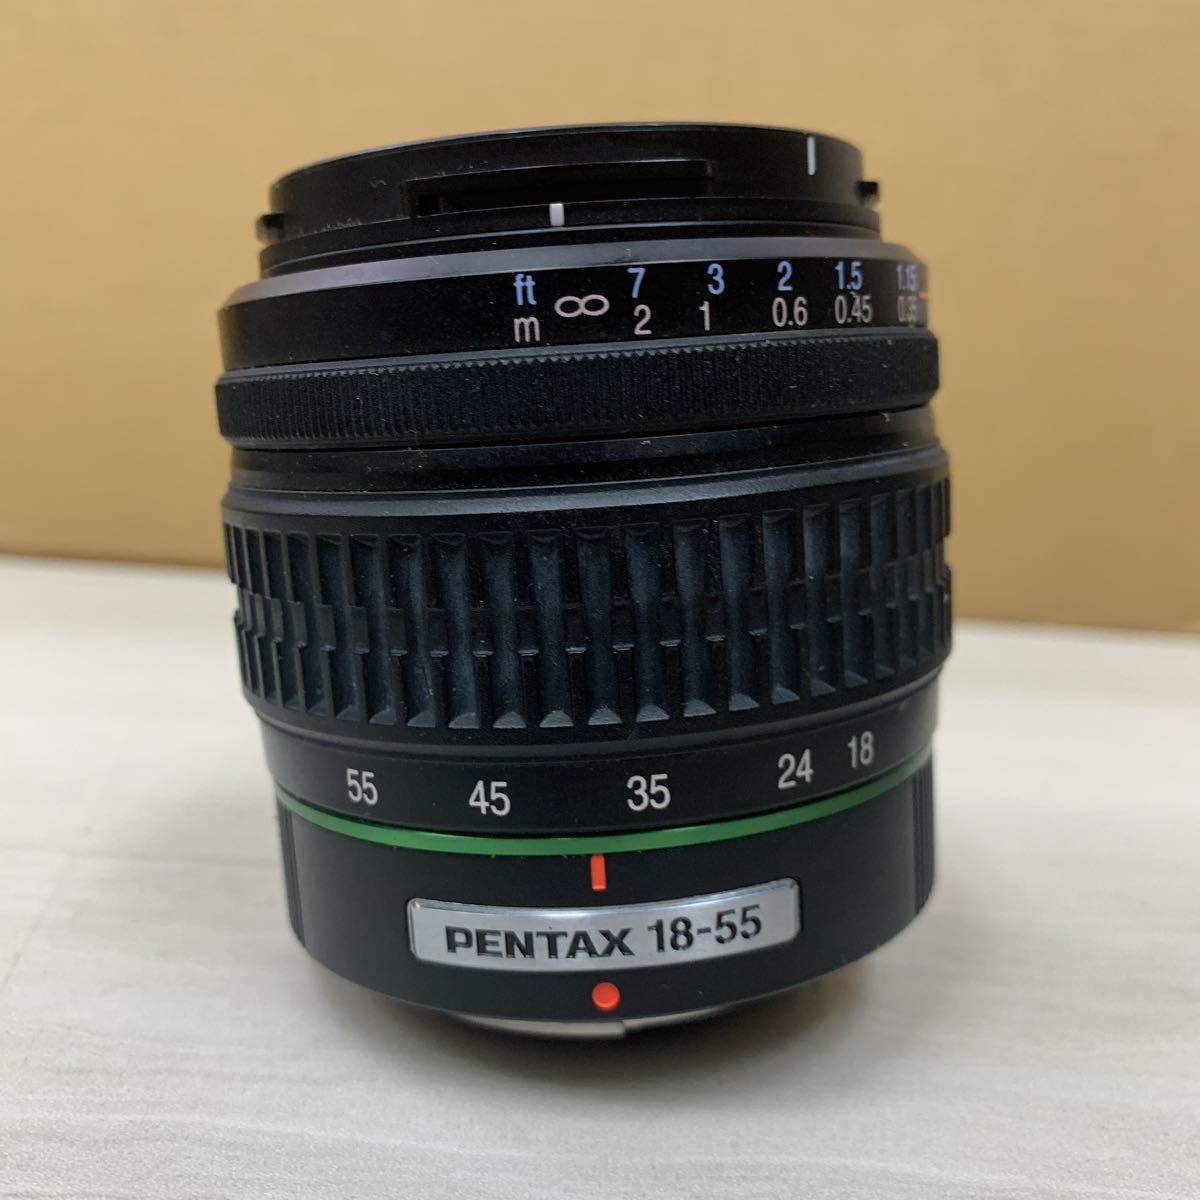 SMC PENTAX DA 1:3.5-5.6 18 - 55mm AL φ52mm ペンタックス レンズ 未確認 LENS 217_画像2